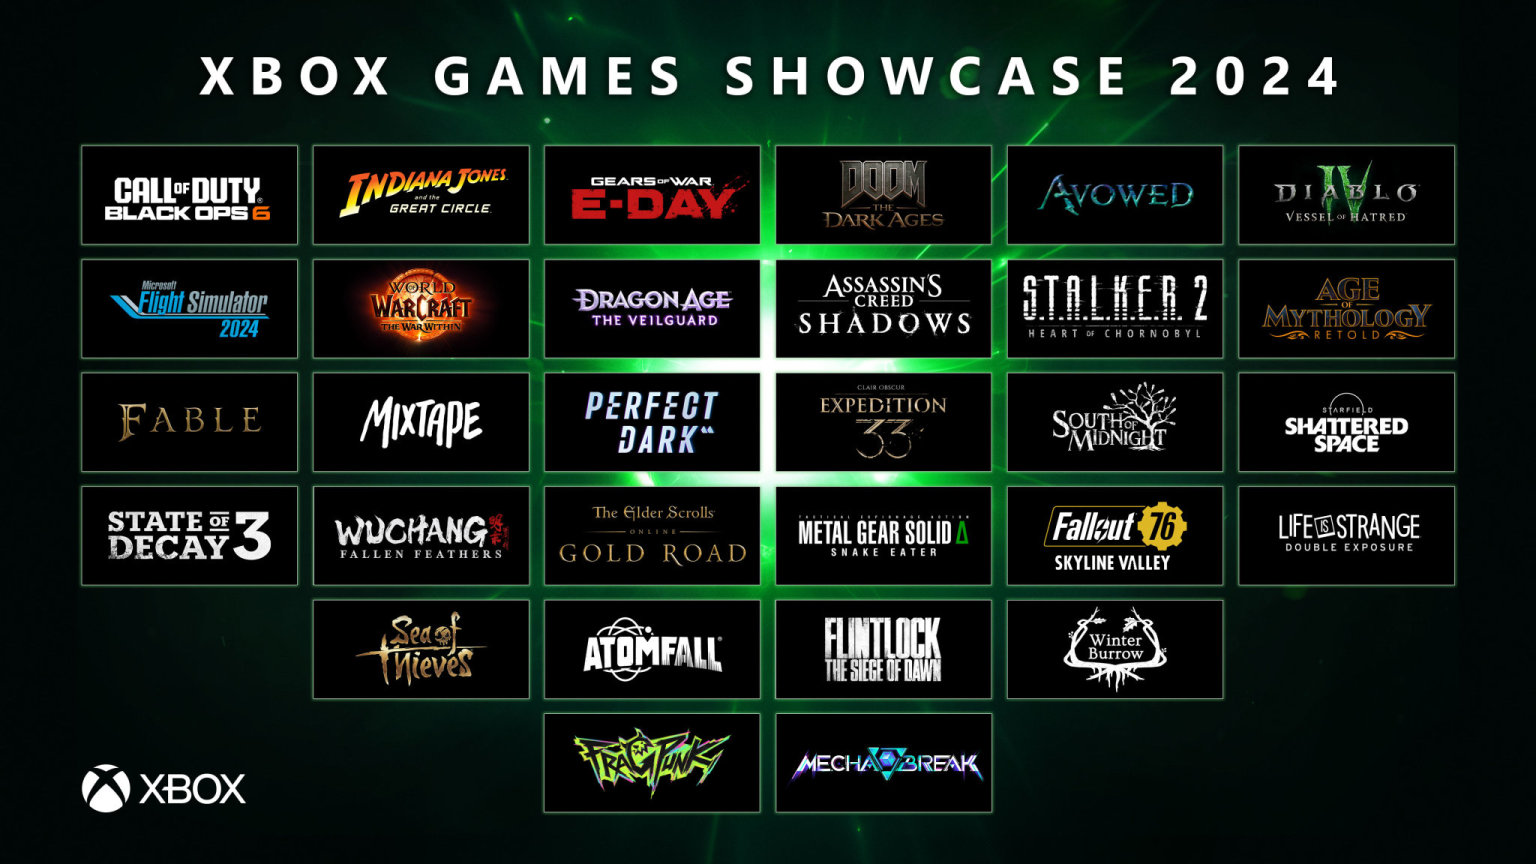 Shrnut novinek ukzanch na akci Xbox Game Showcase 2024